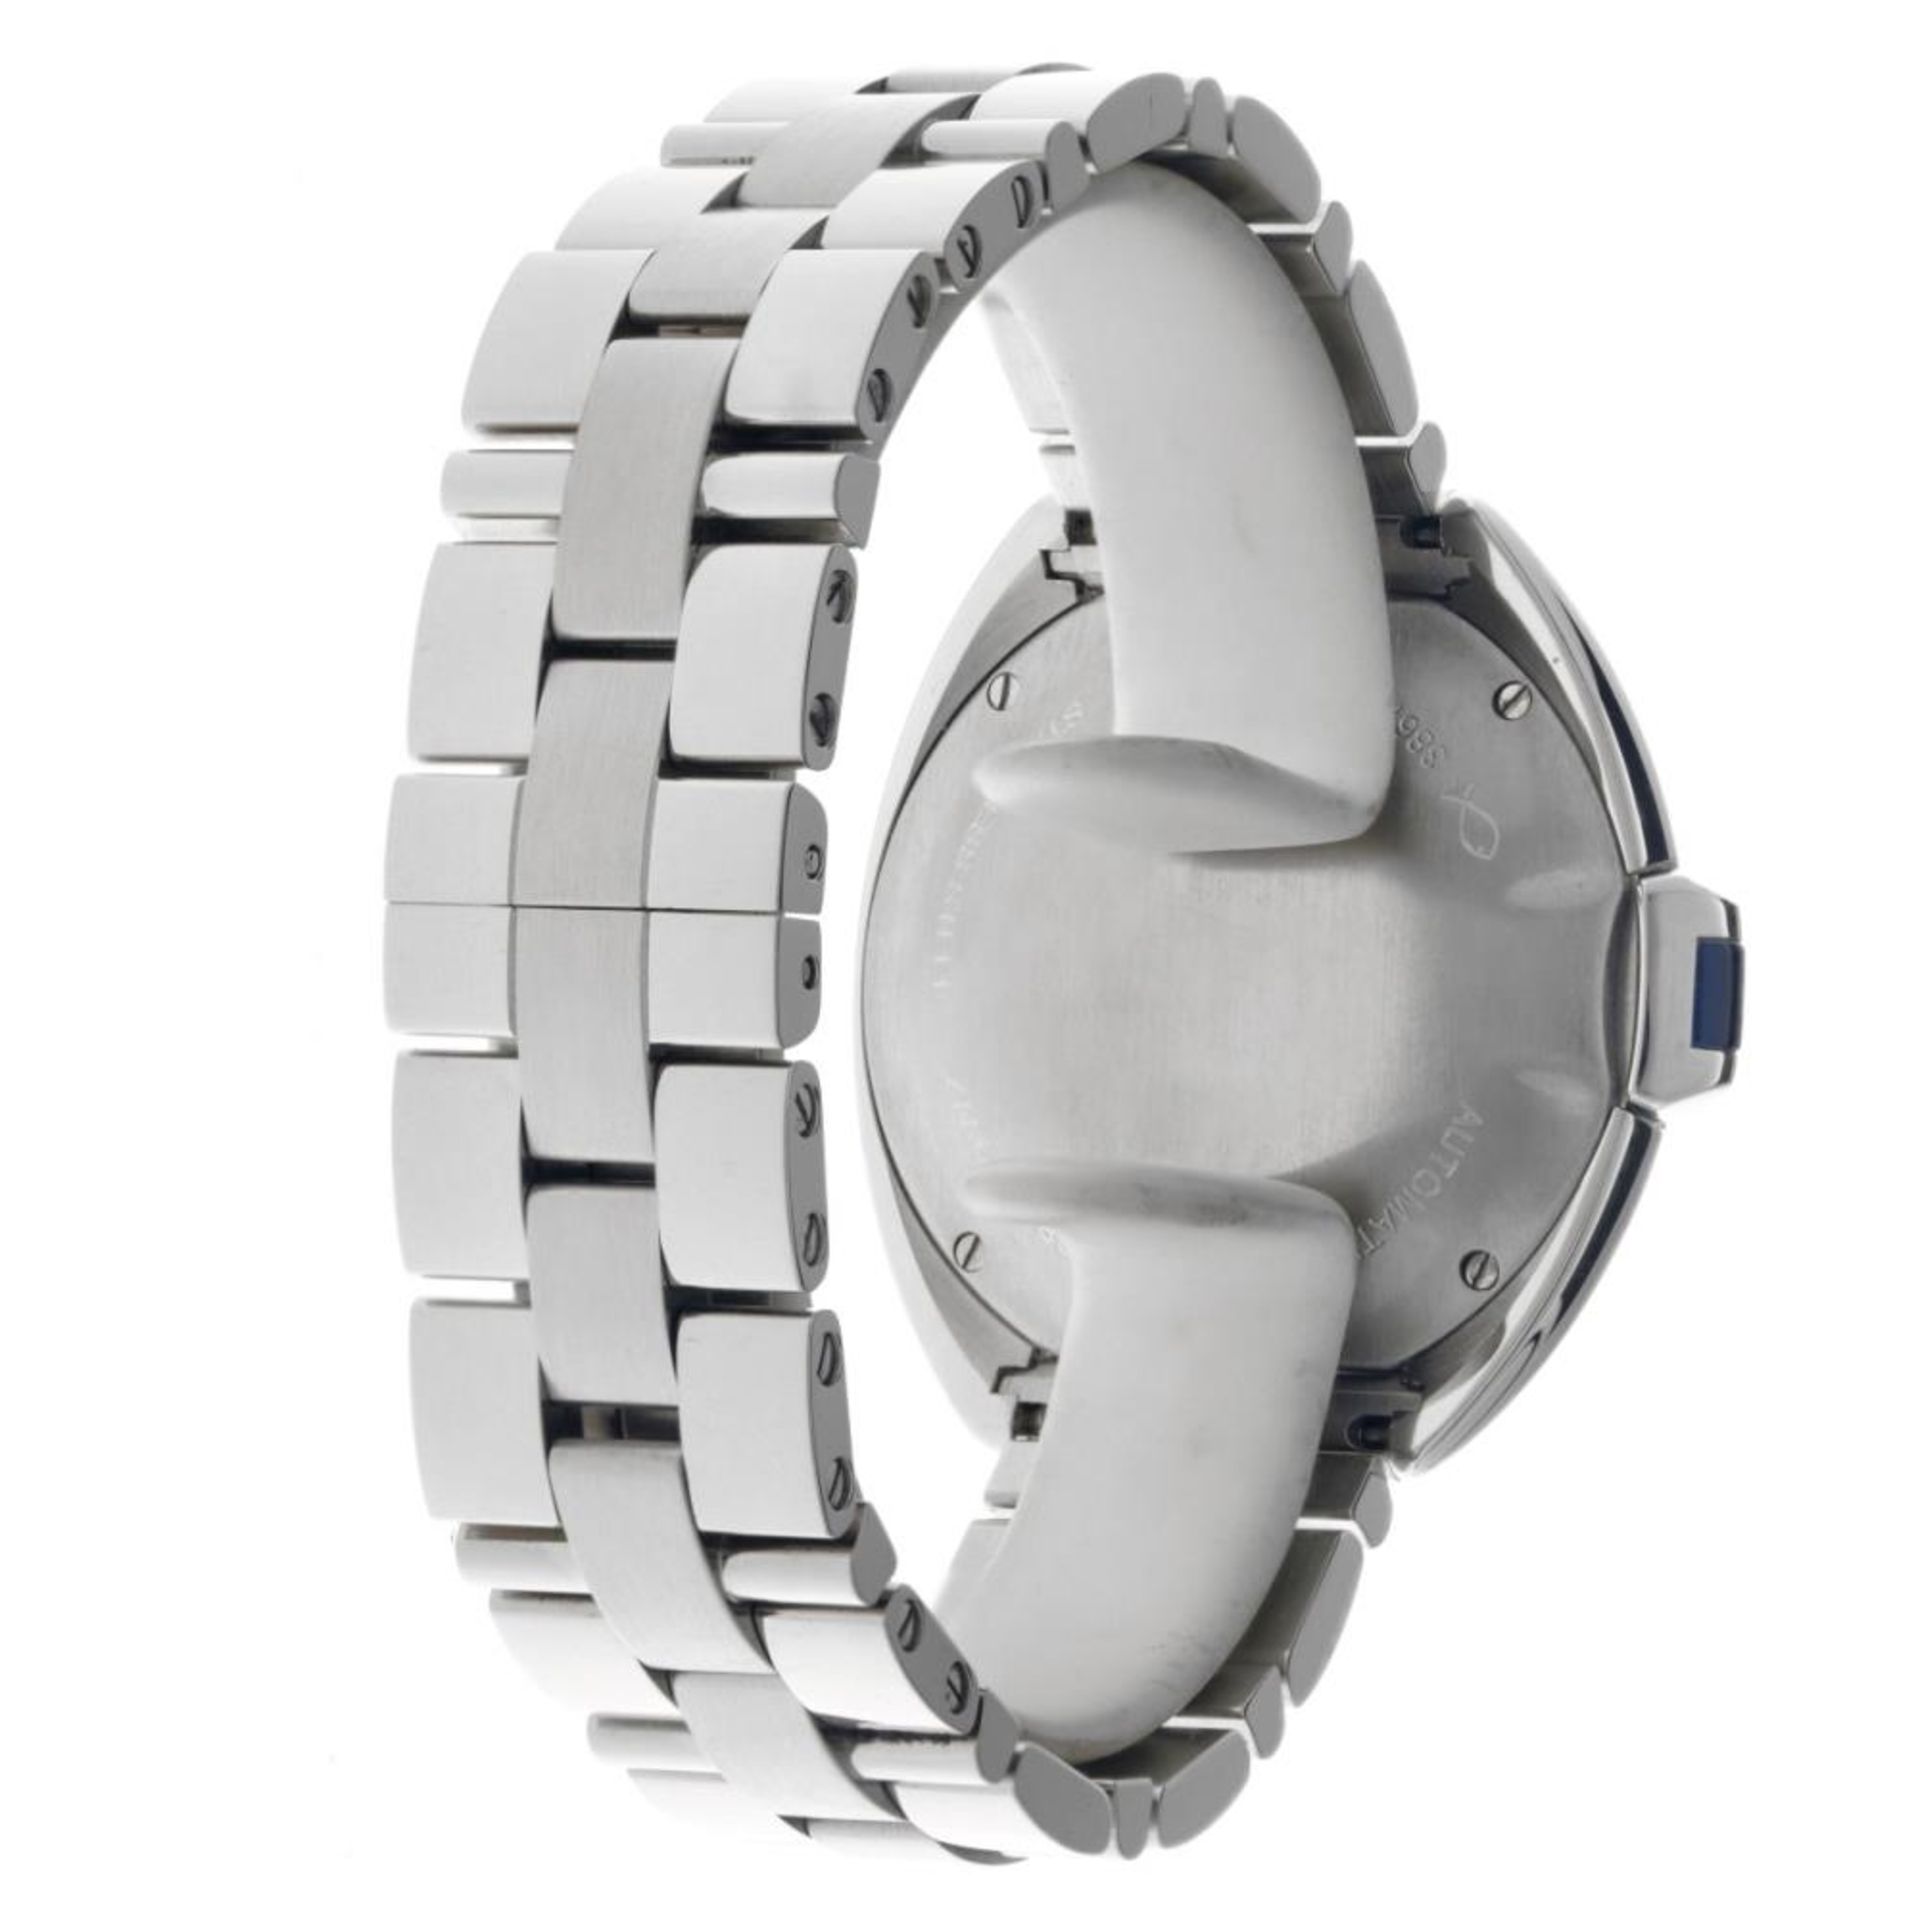 Cartier Clé WSCL0005 - Men's watch - 2020. - Image 6 of 12